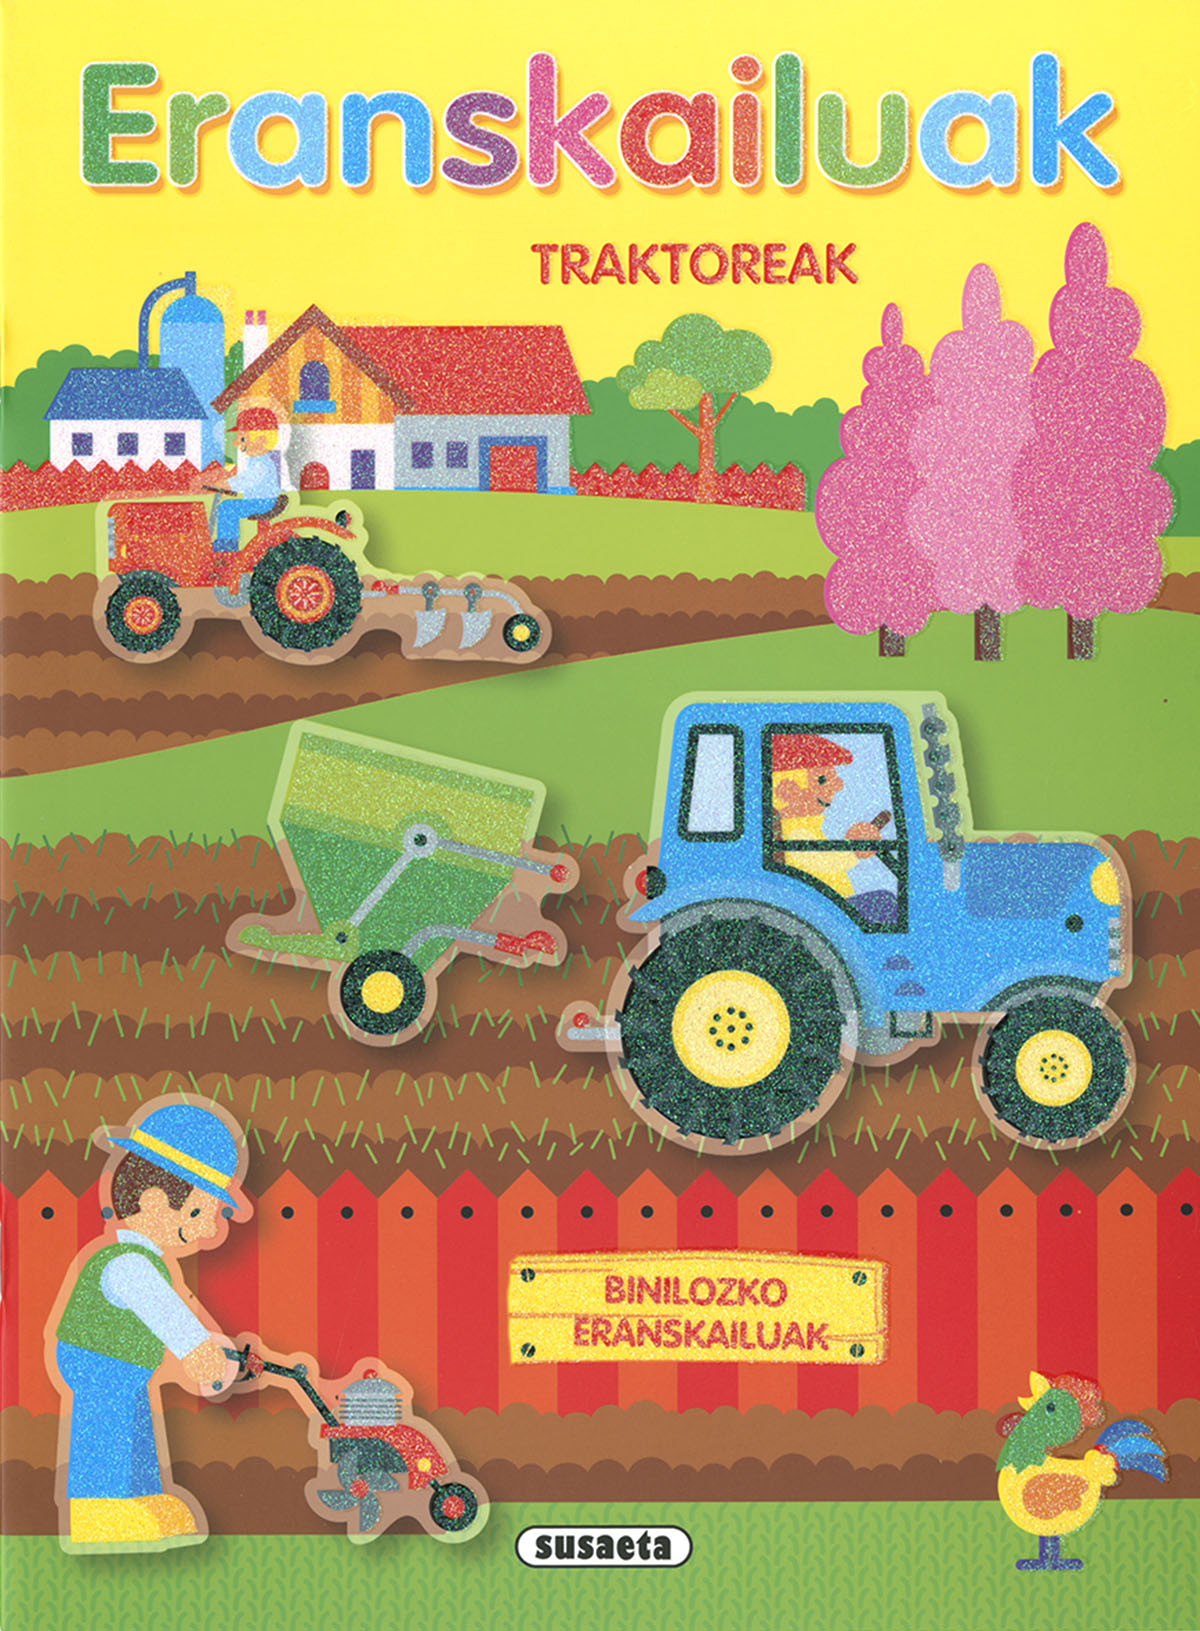 Traktoreak